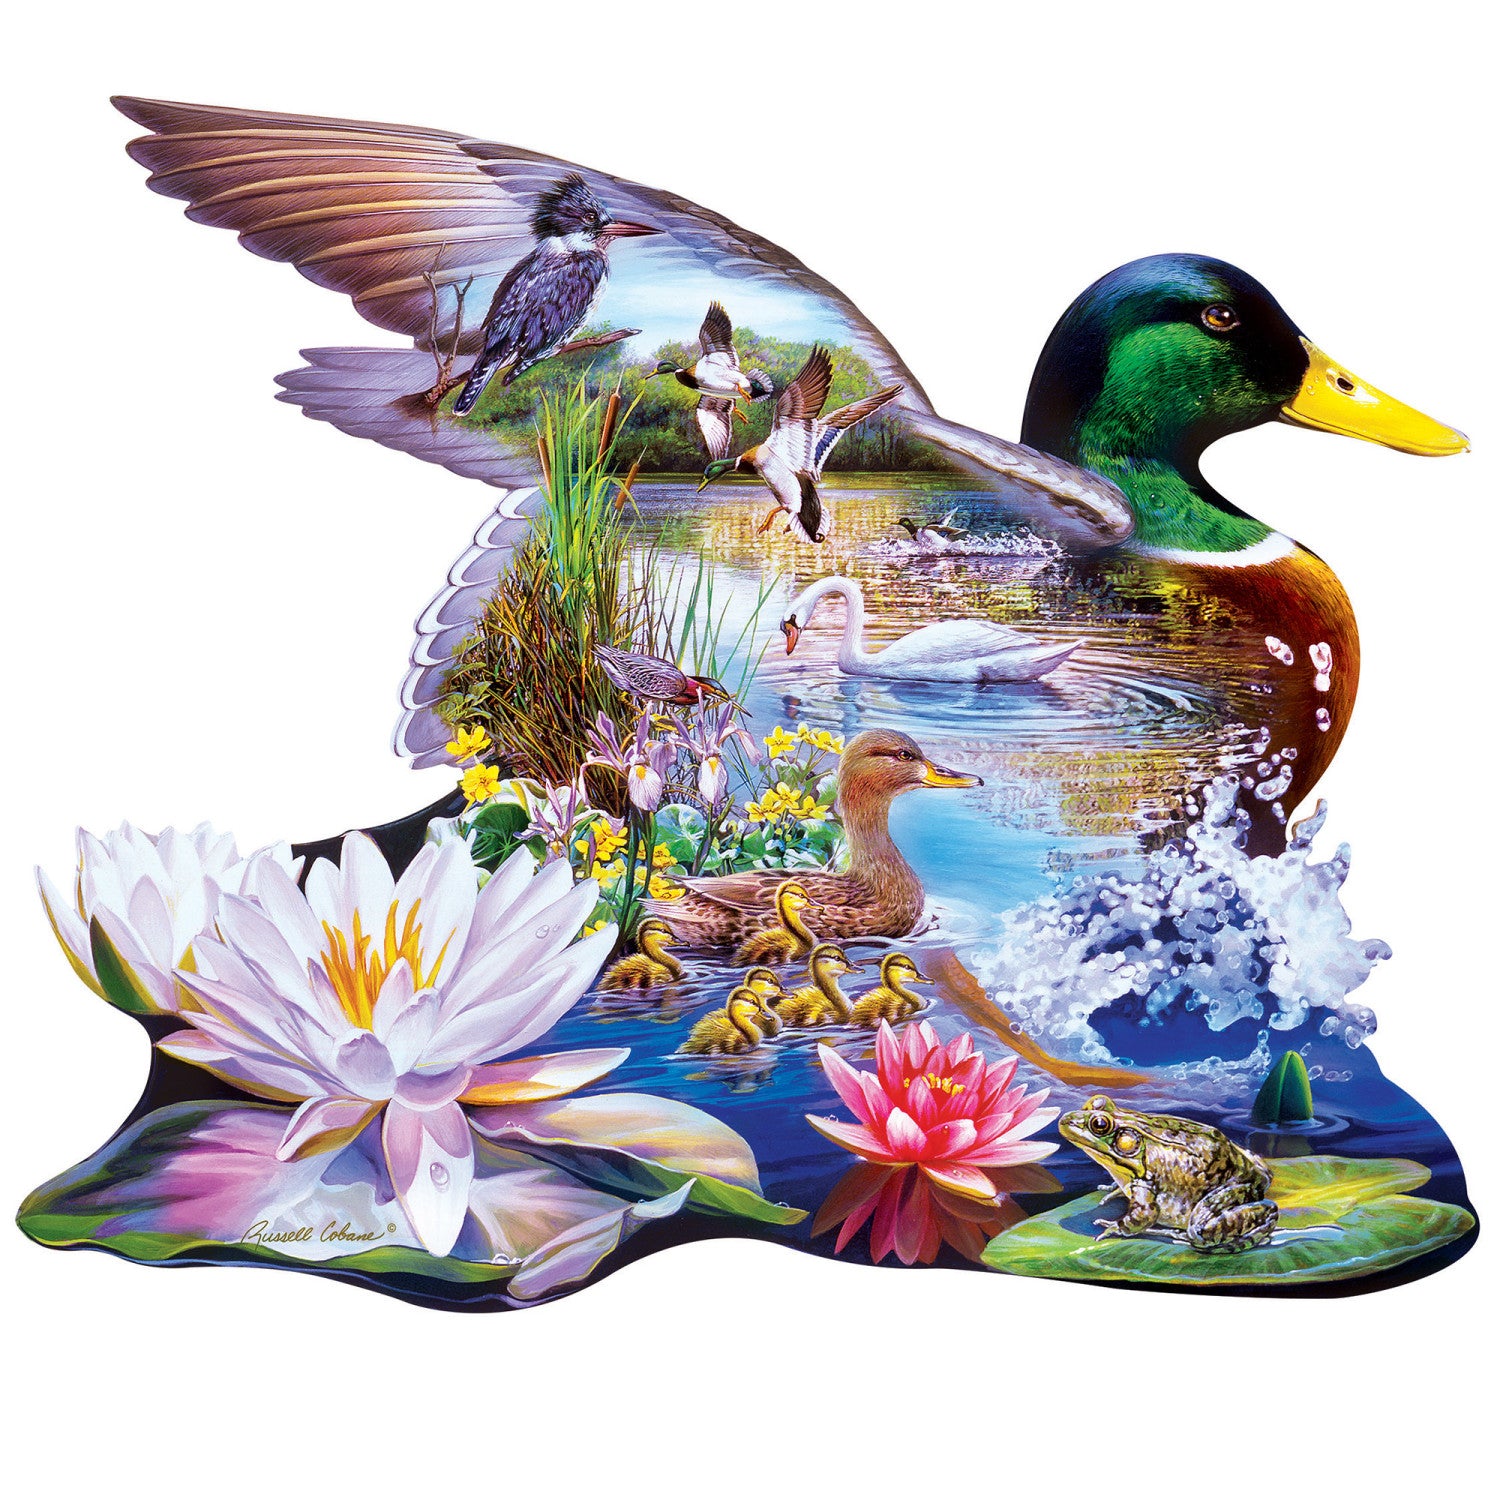 Contours - Woodland Ducks 500 Piece Puzzle